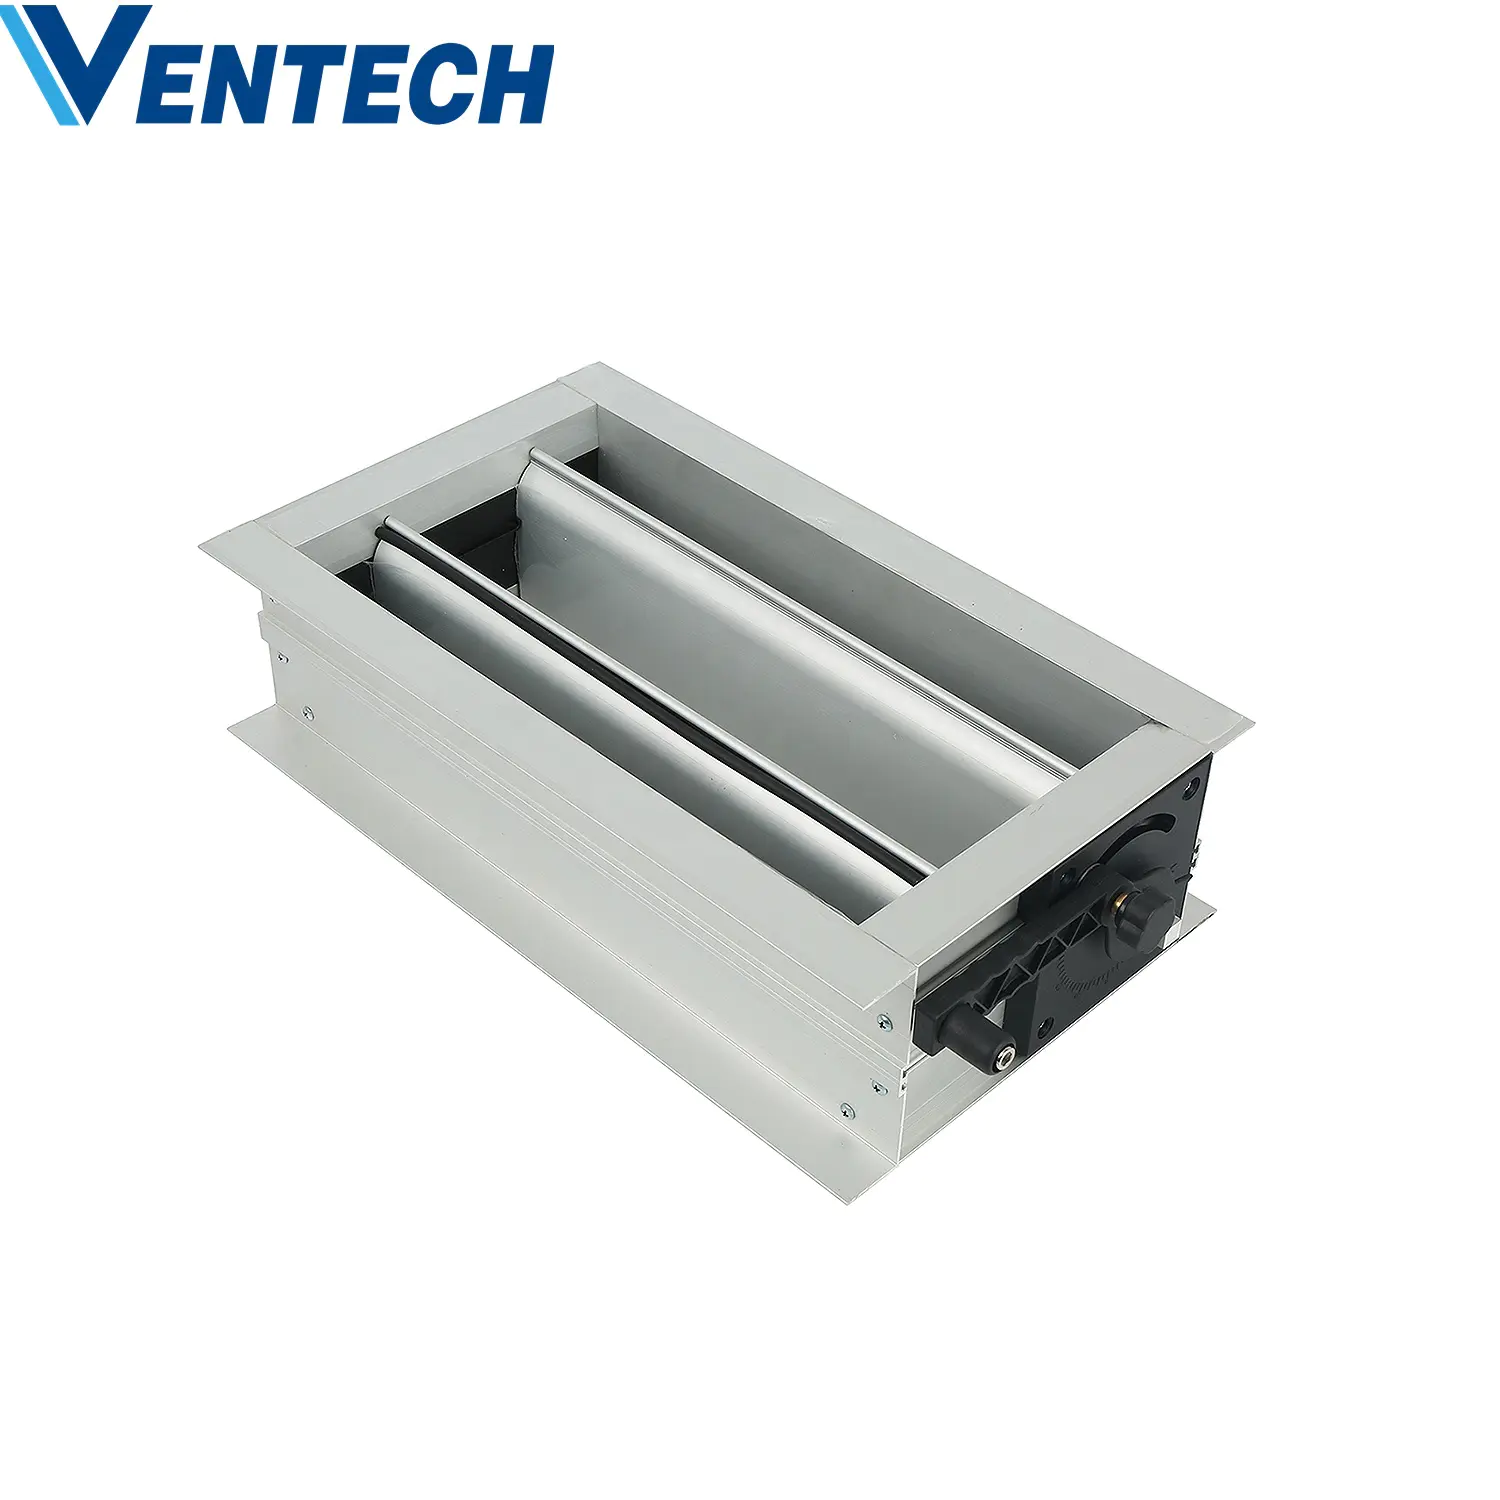 Hvac Ventilation Hot Sale Volume Control Adjustable Manul Air Duct Motorized  Volume Control Damper